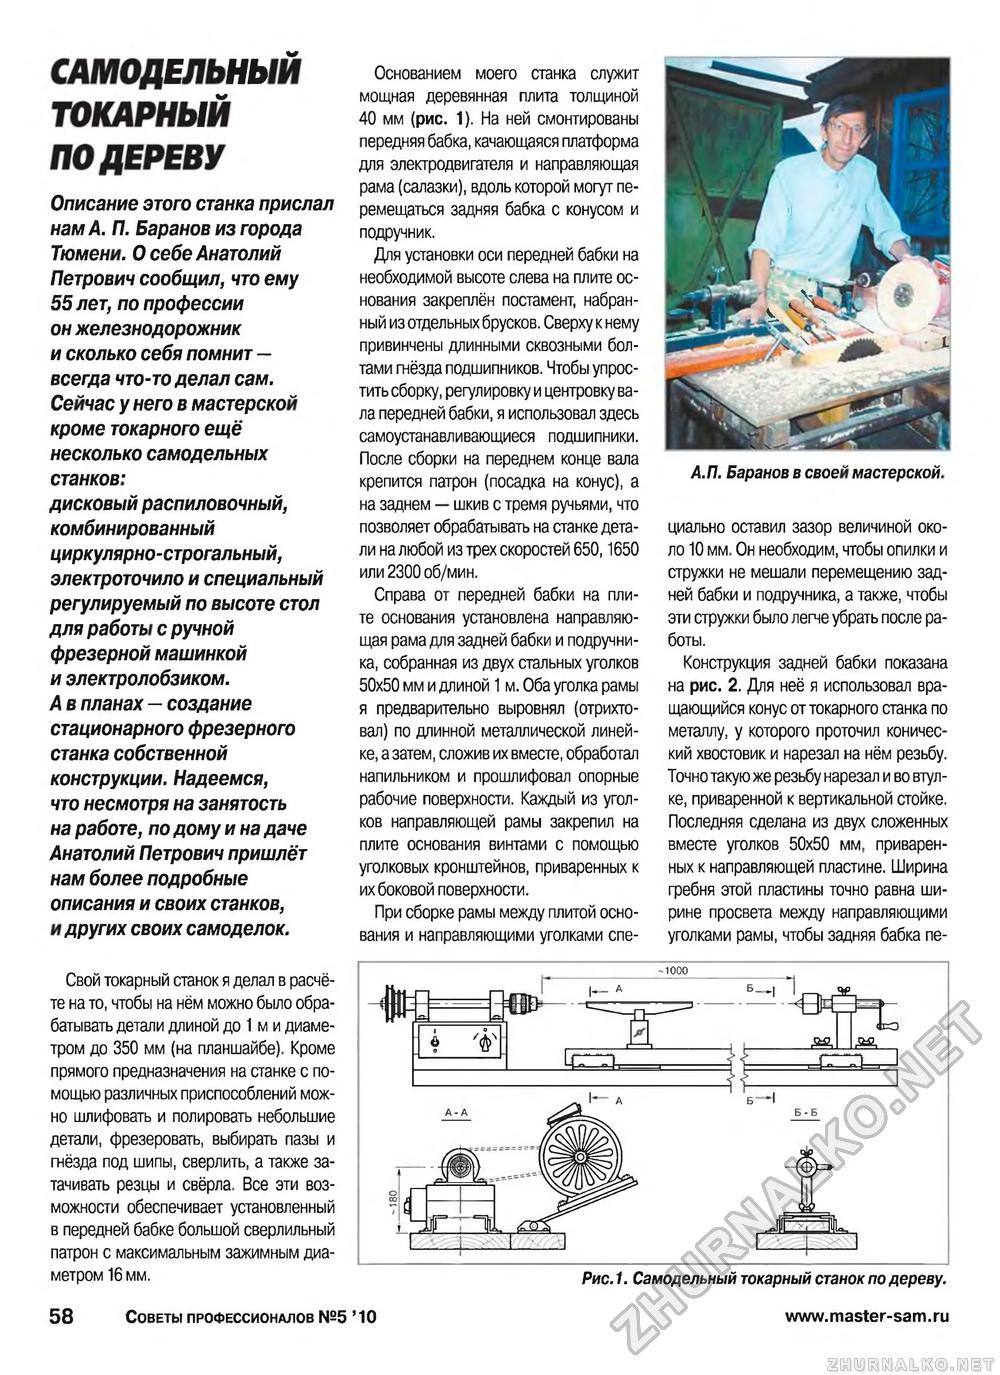 Советы профессионалов 2010-05, страница 59